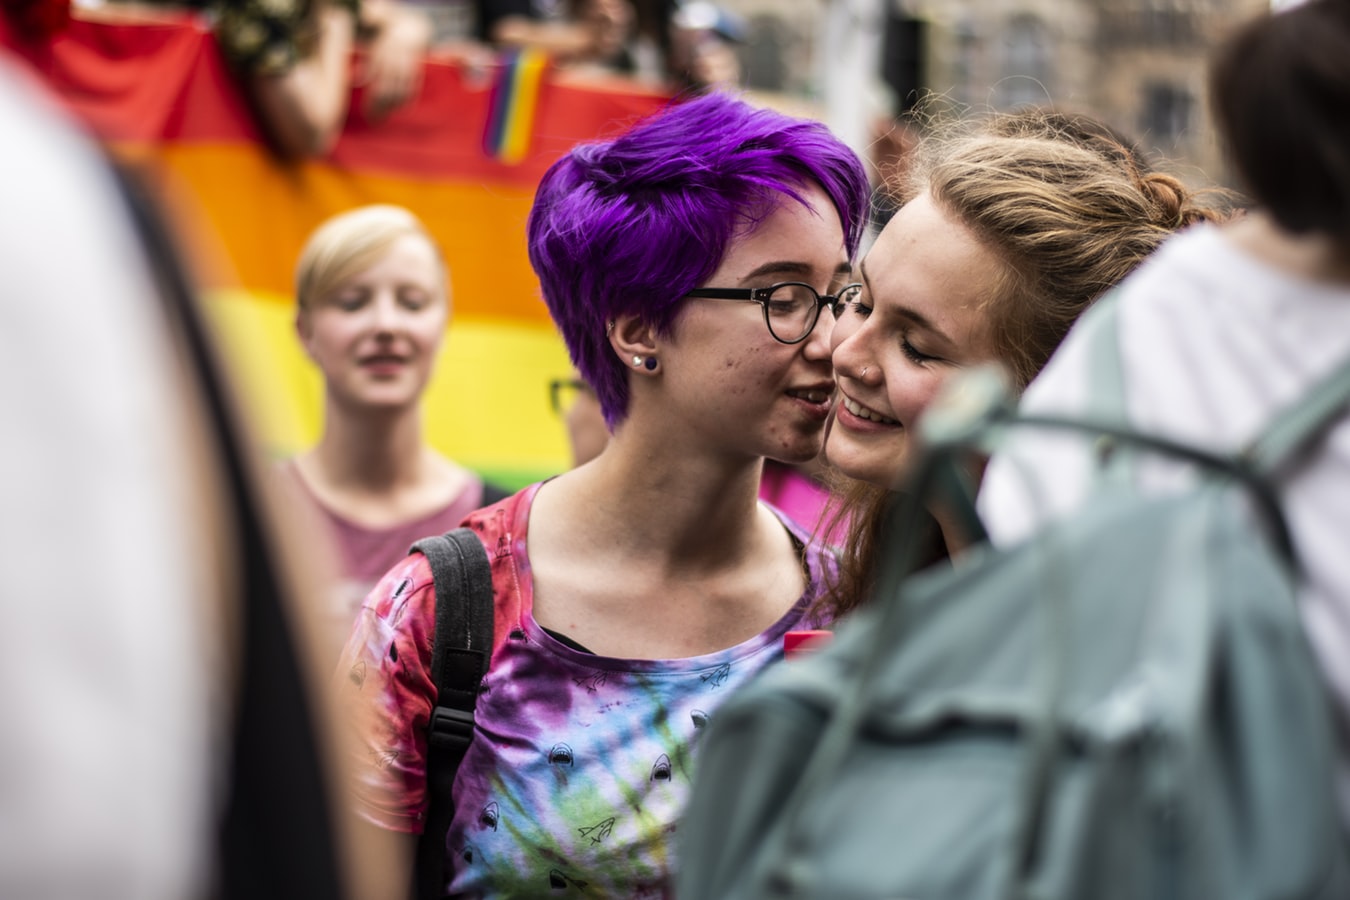 Σεξ στην Αγγλία: Μόνο για παντρεμένα ετεροφυλόφιλα ζευγάρια, λέει η Εκκλησία